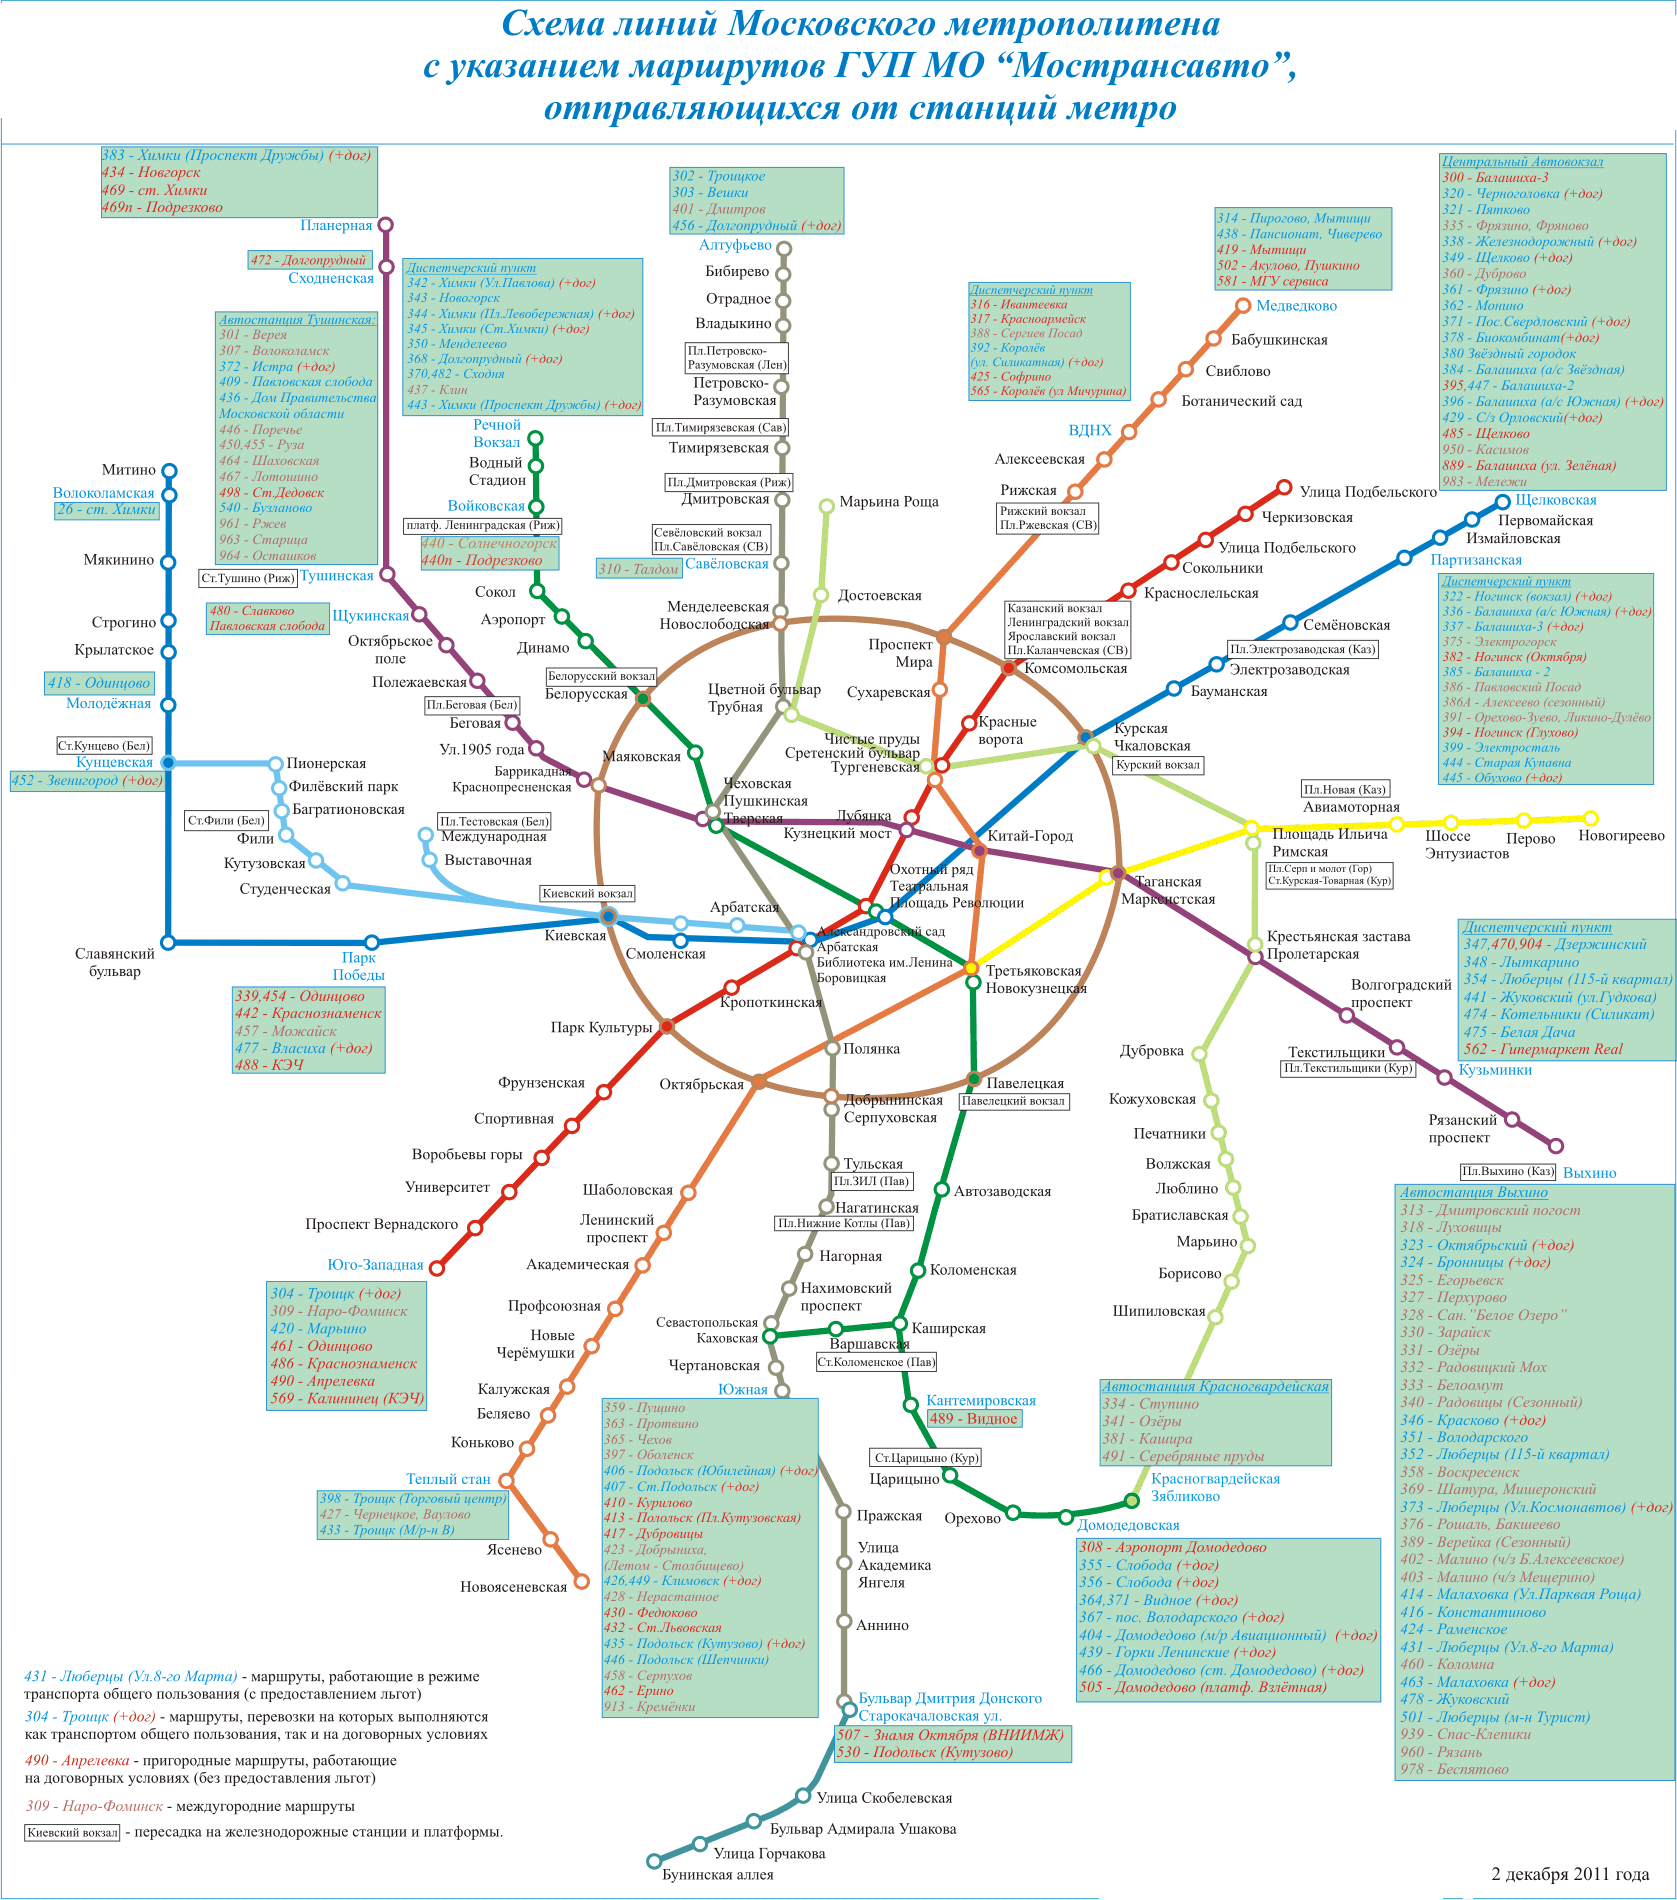 Схема маршрутов ГУП МО Мострансавто отправляющихся от станций метро